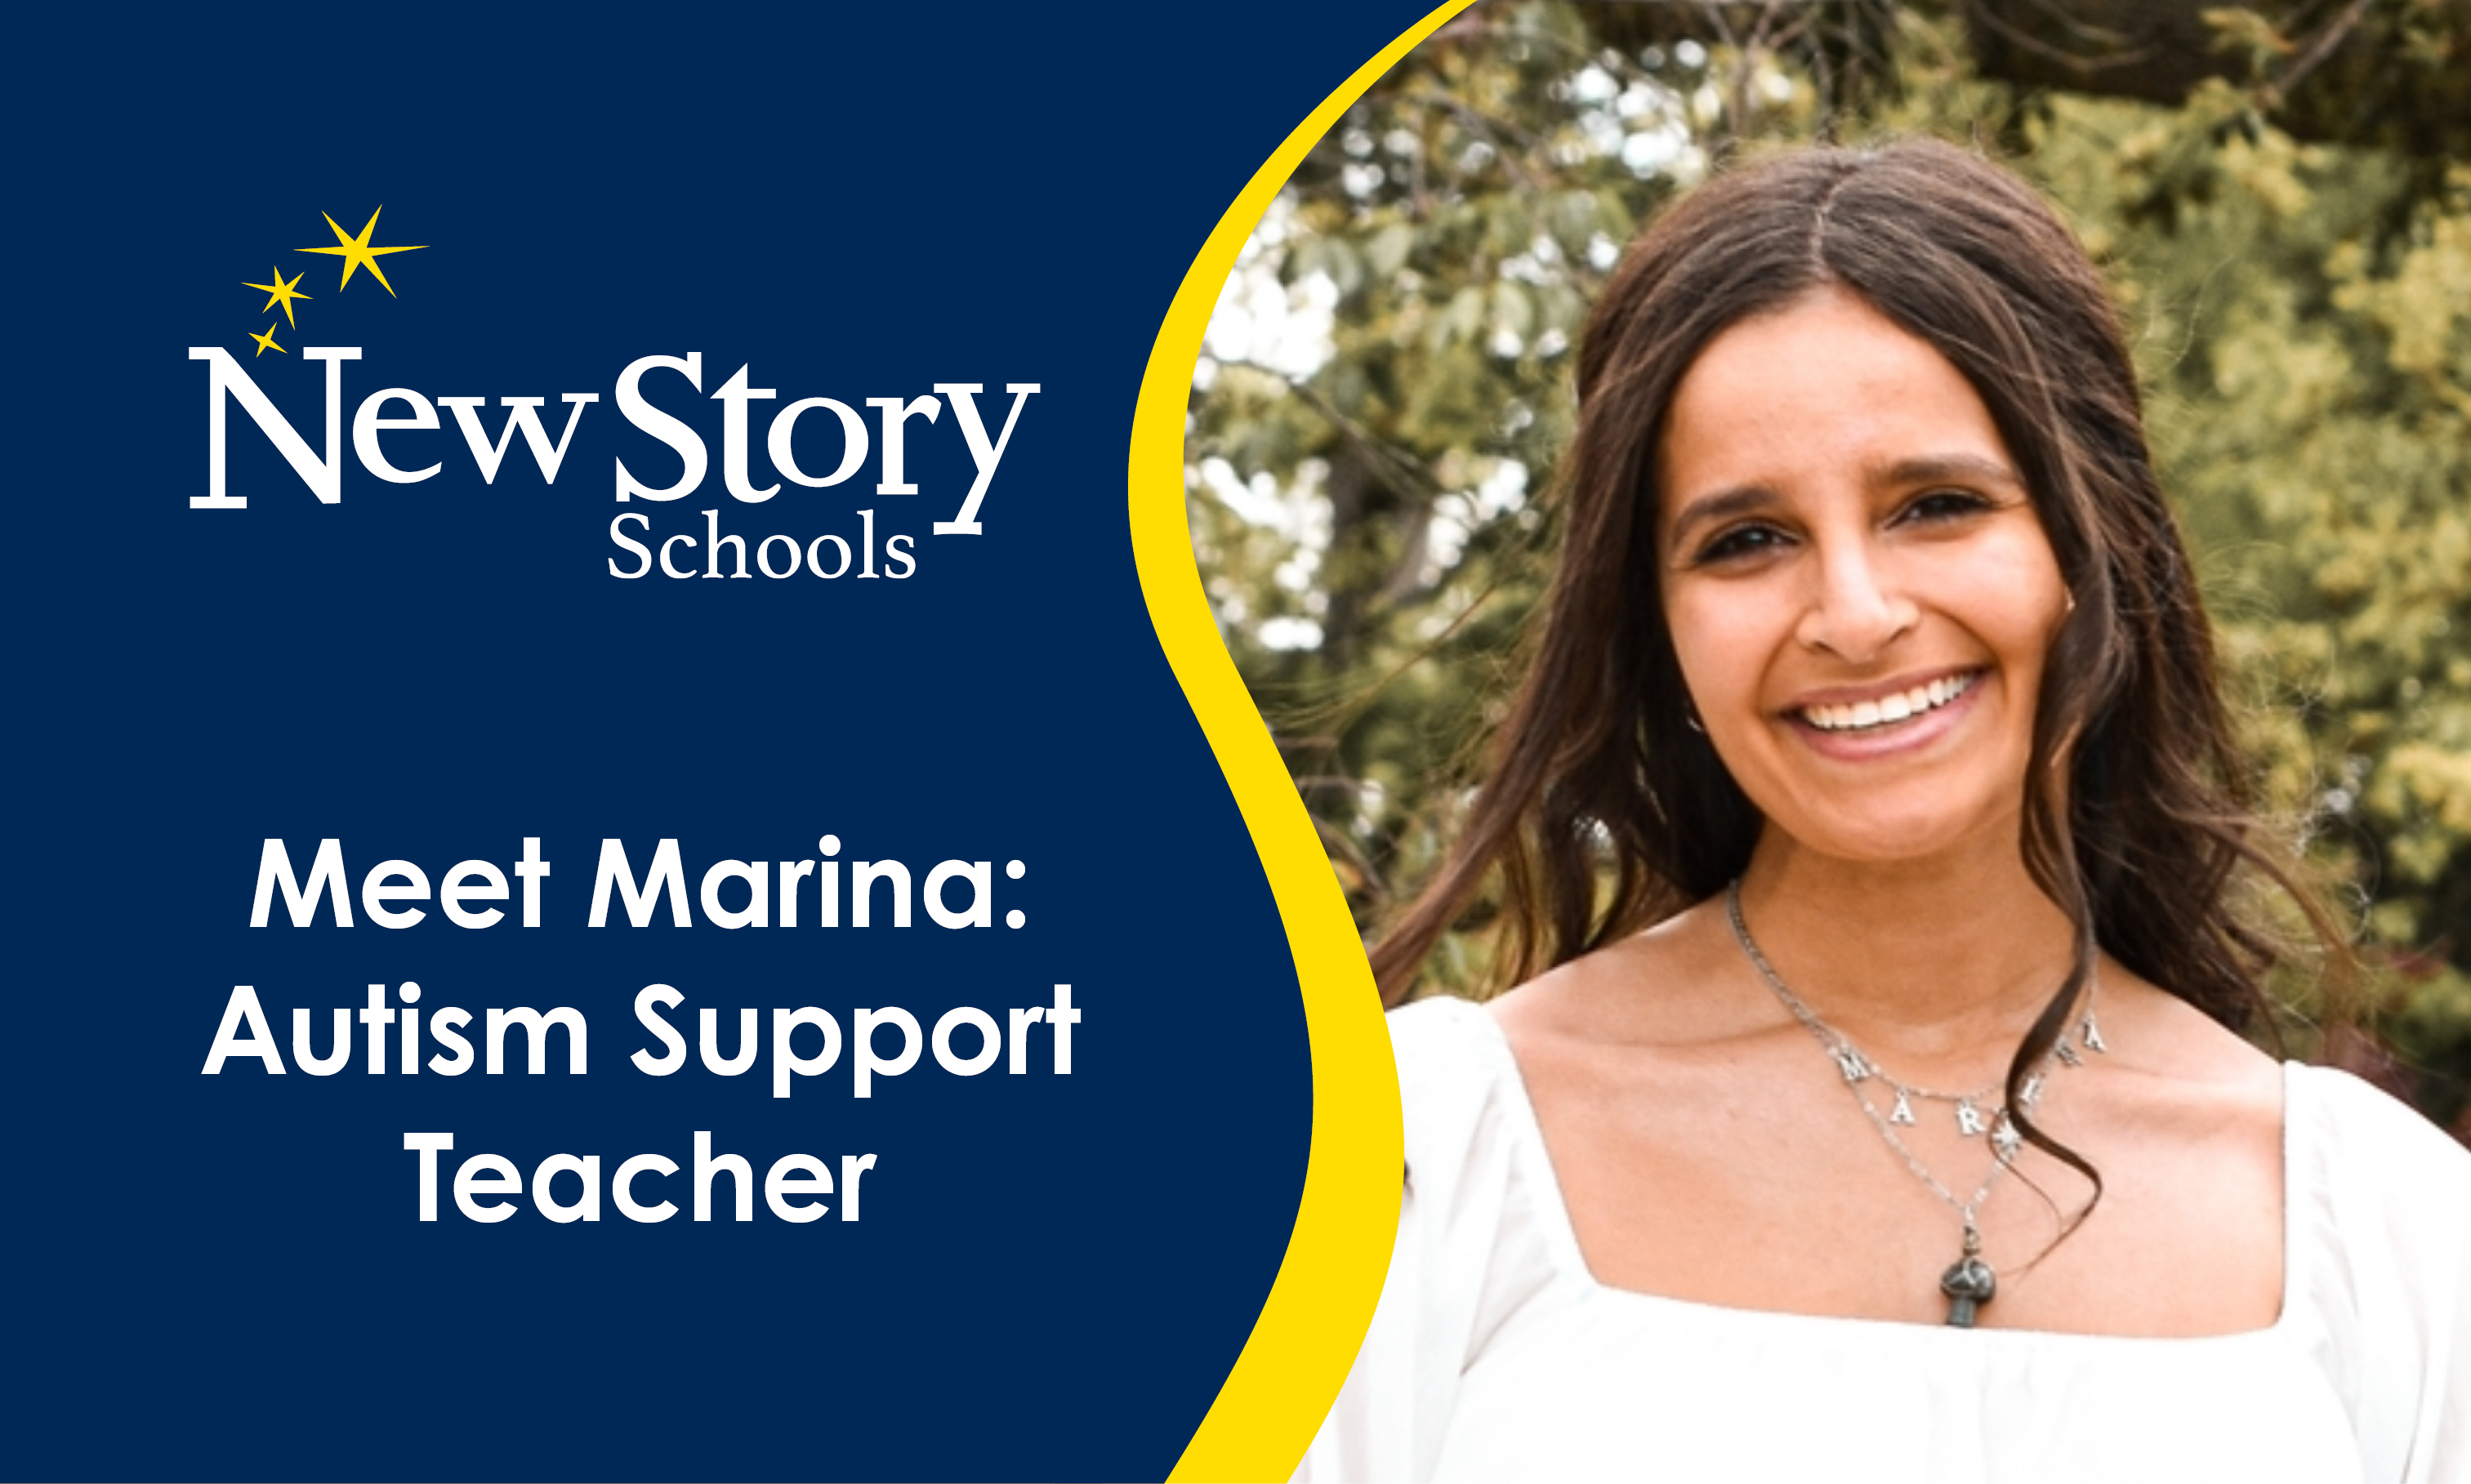 Meet Marina: Autism Support Teacher